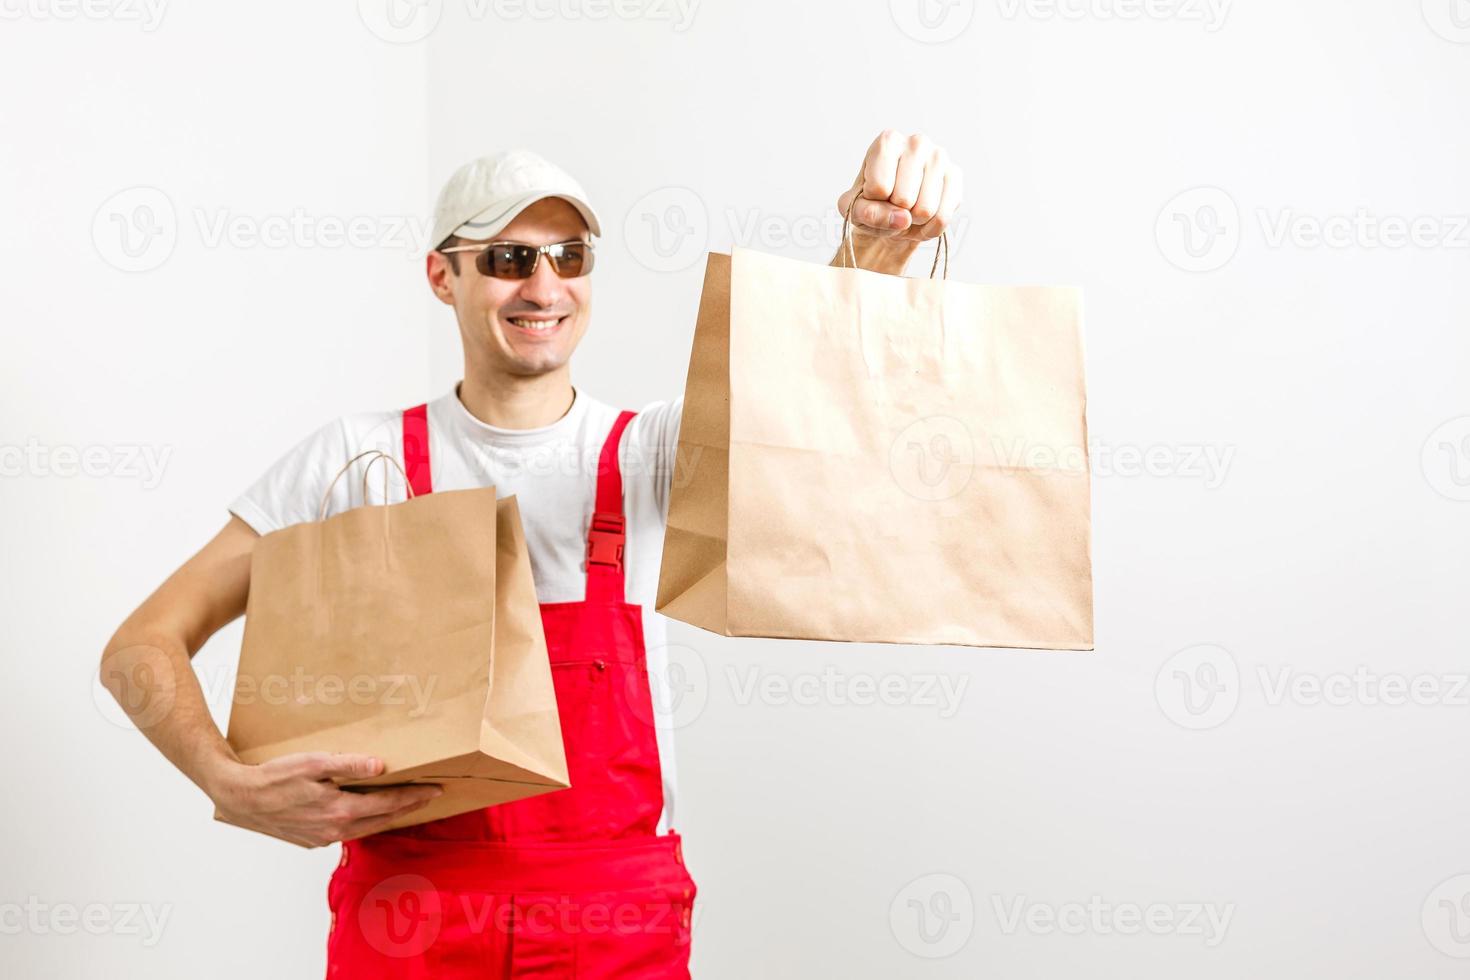 servicio de entrega, comida rápida y concepto de personas - hombre feliz con café y bolsa de papel desechable foto